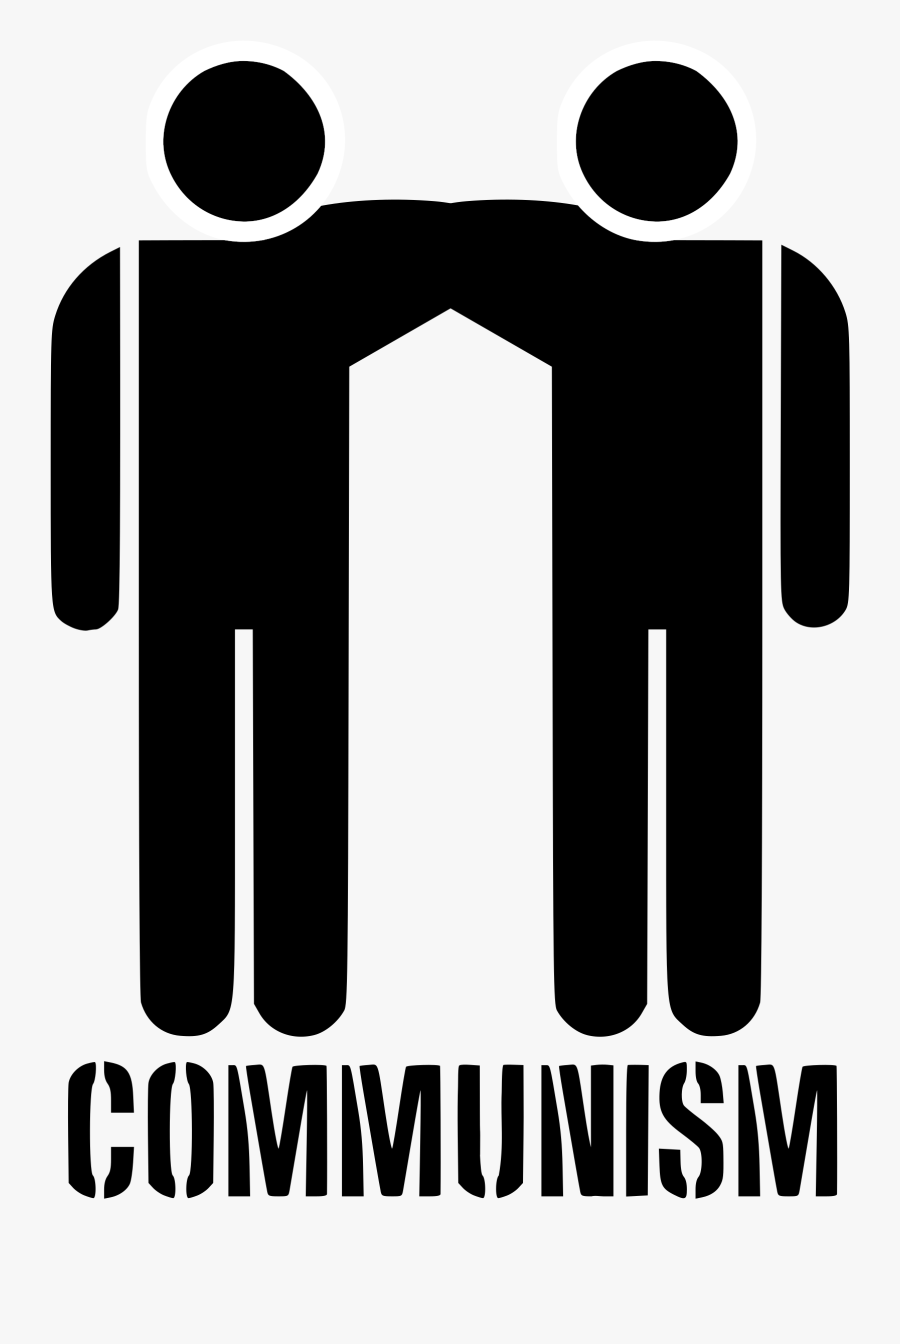 Communism Stencil Clip Arts - Communism Clipart, Transparent Clipart